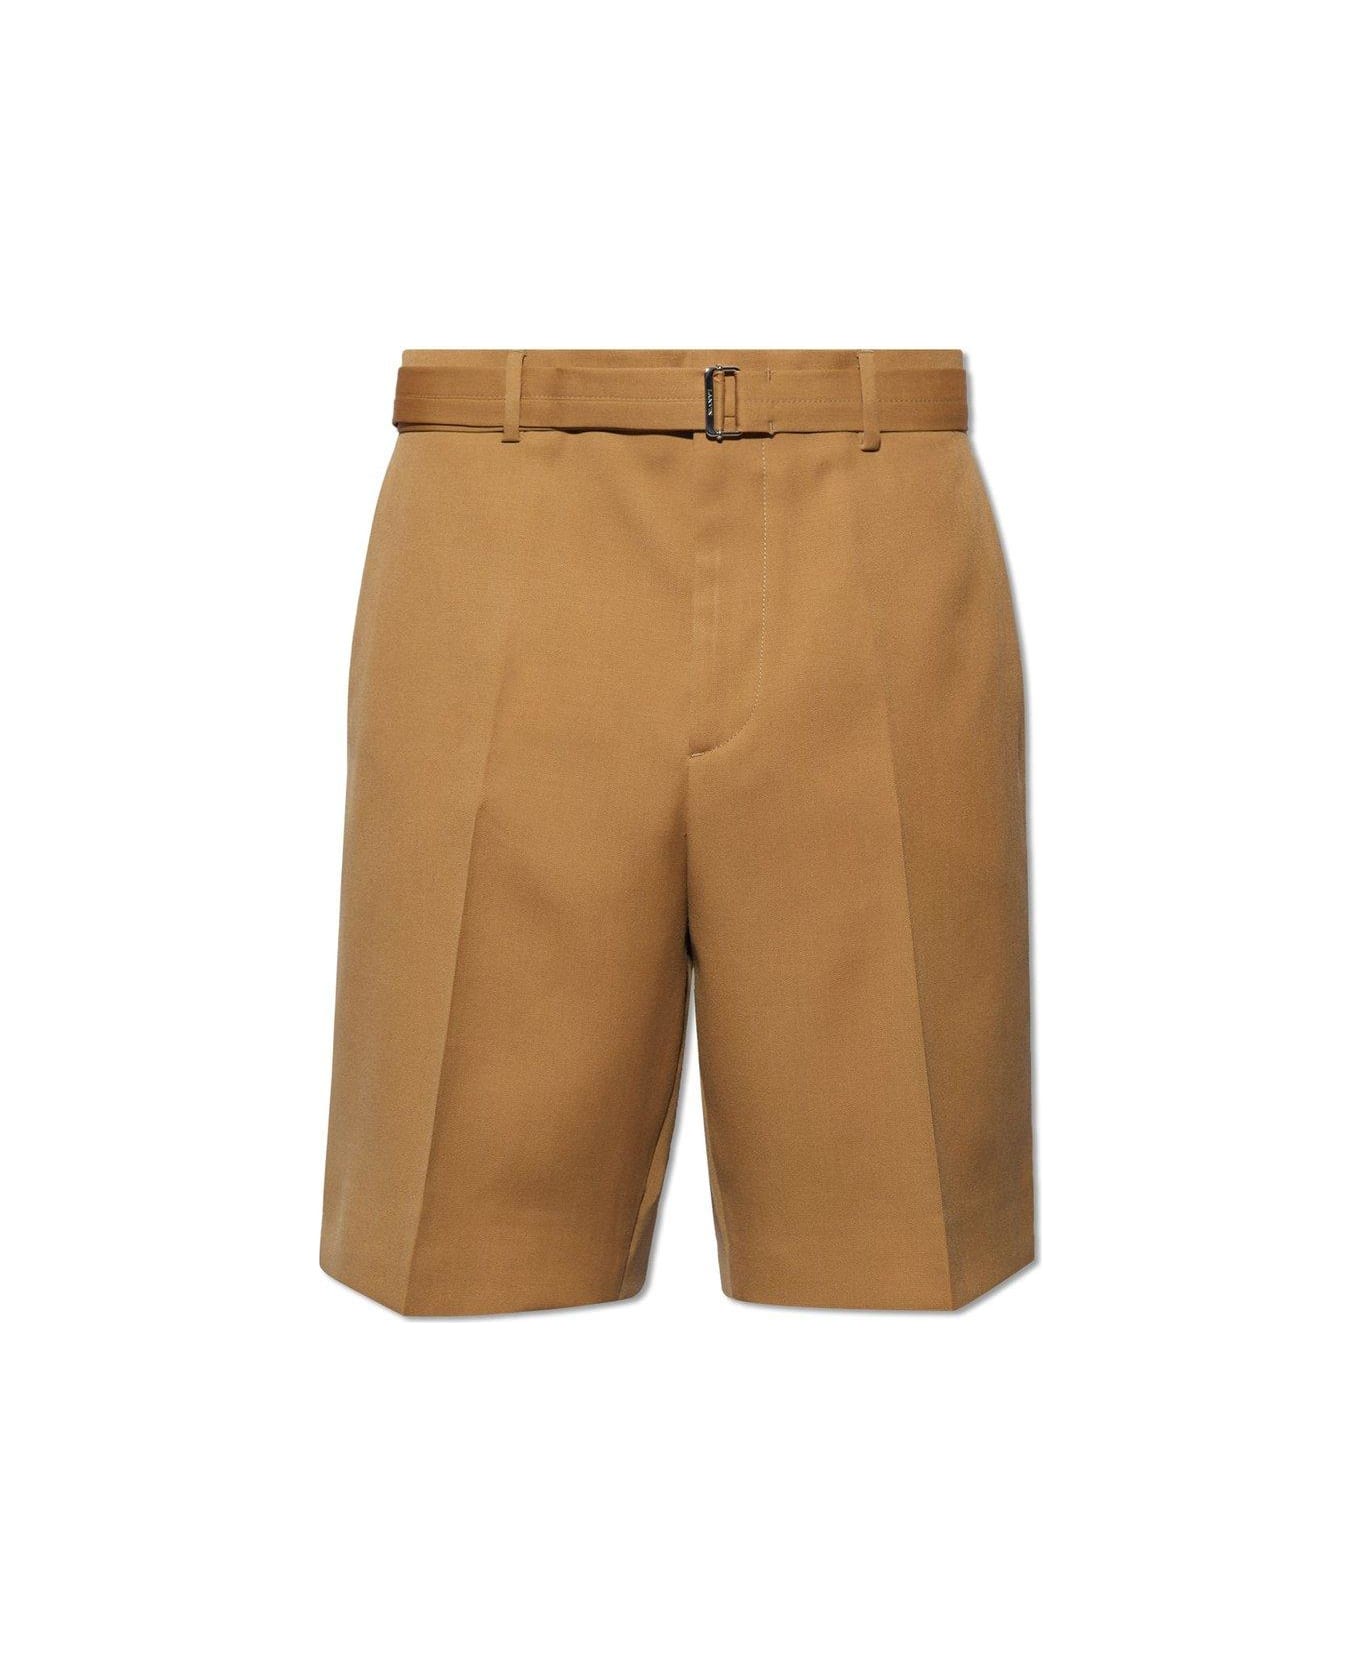 Lanvin Pressed Crease Belted Shorts - Beige